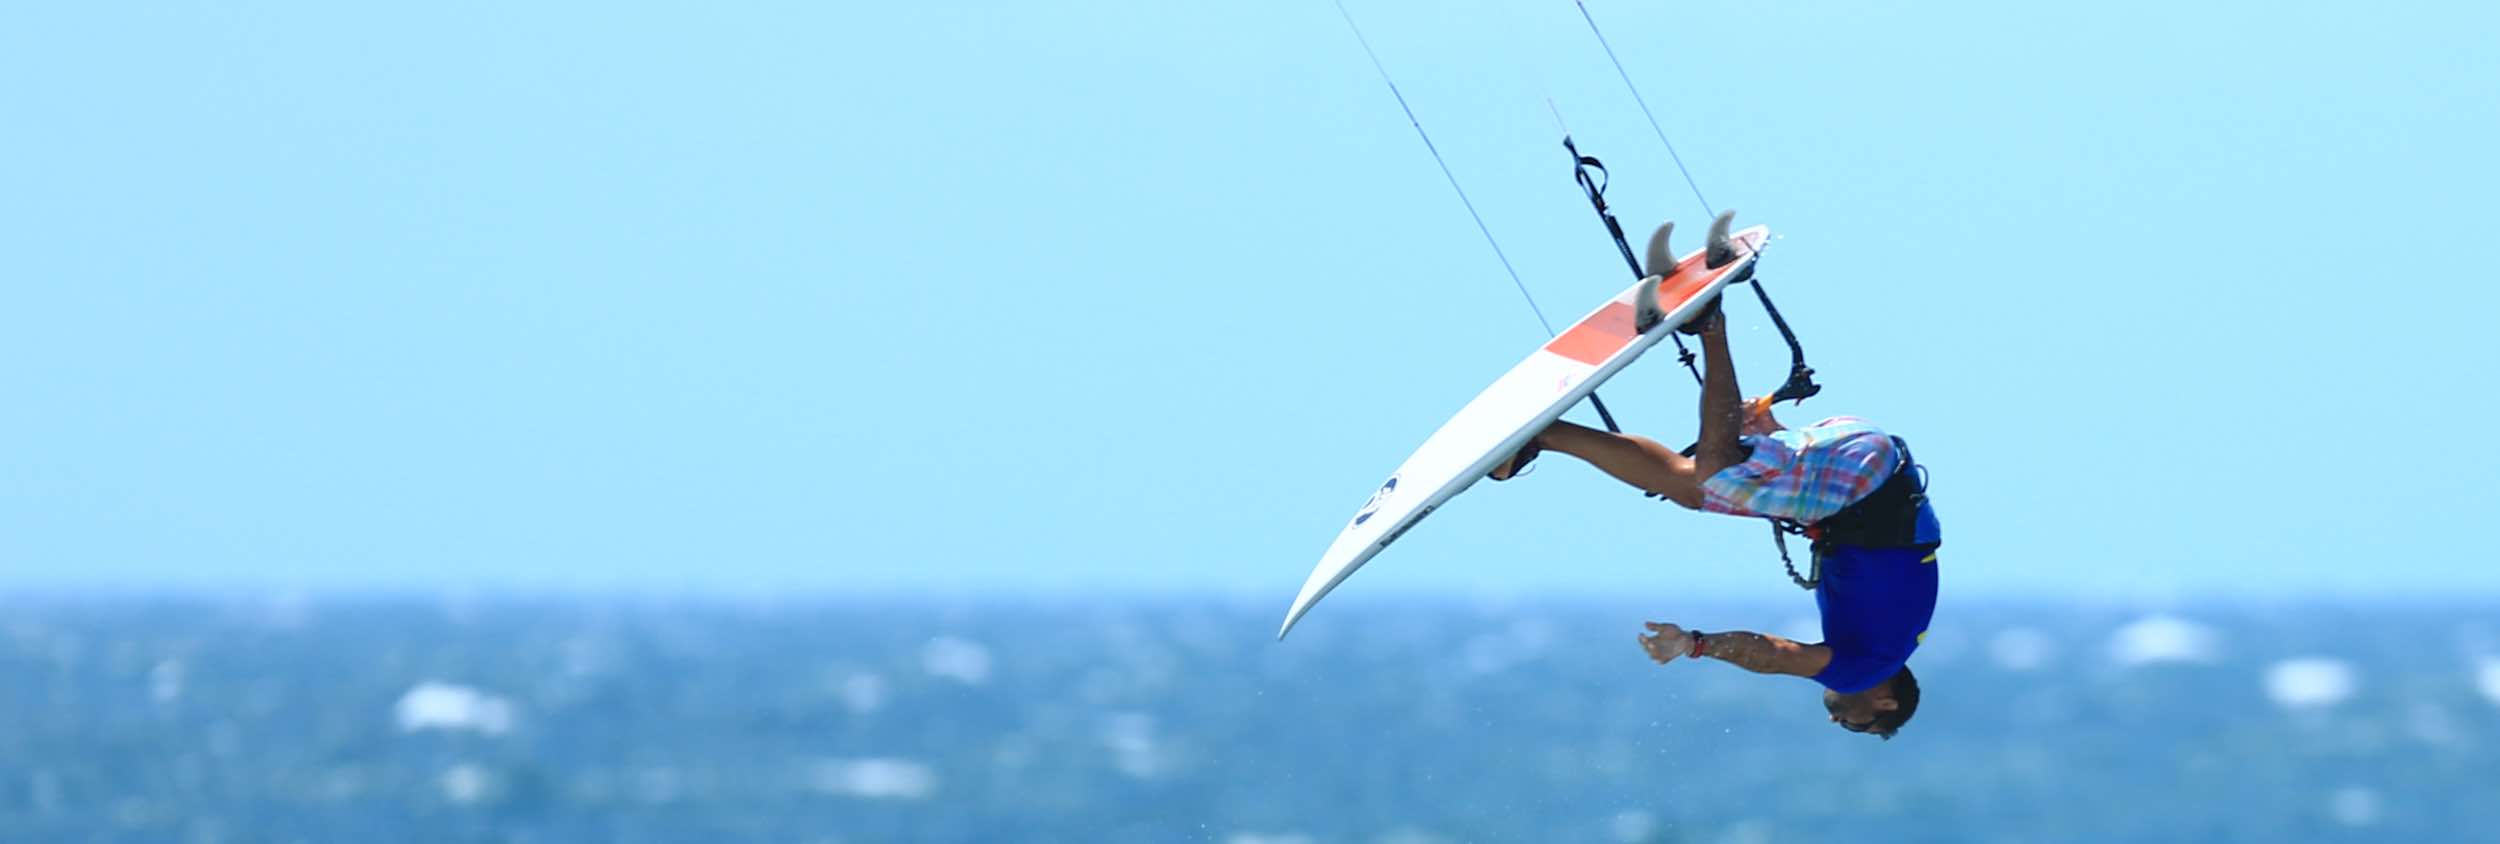 Prea kitesurfing Brazil